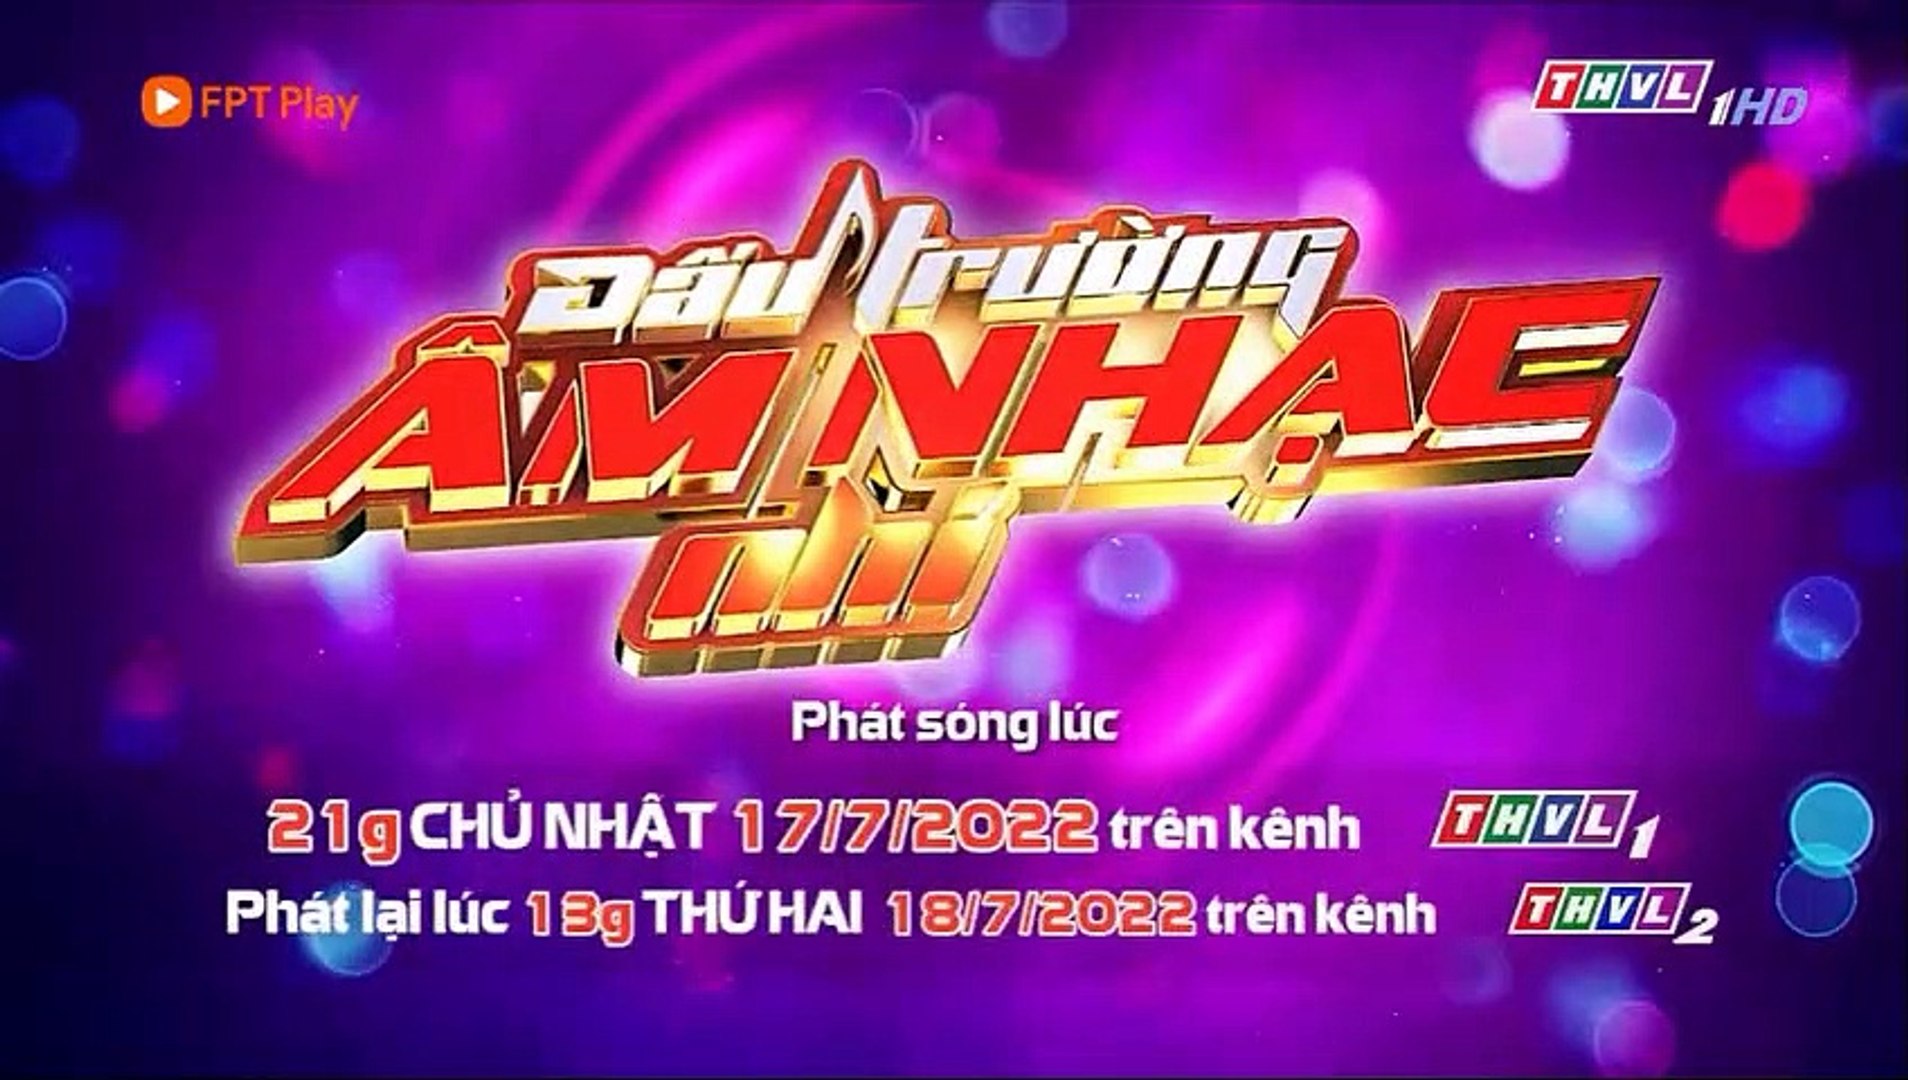 ⁣Phim Lưới Trời Tập 78 - THVL1 - Phim Việt Nam Hay Nhất 2022